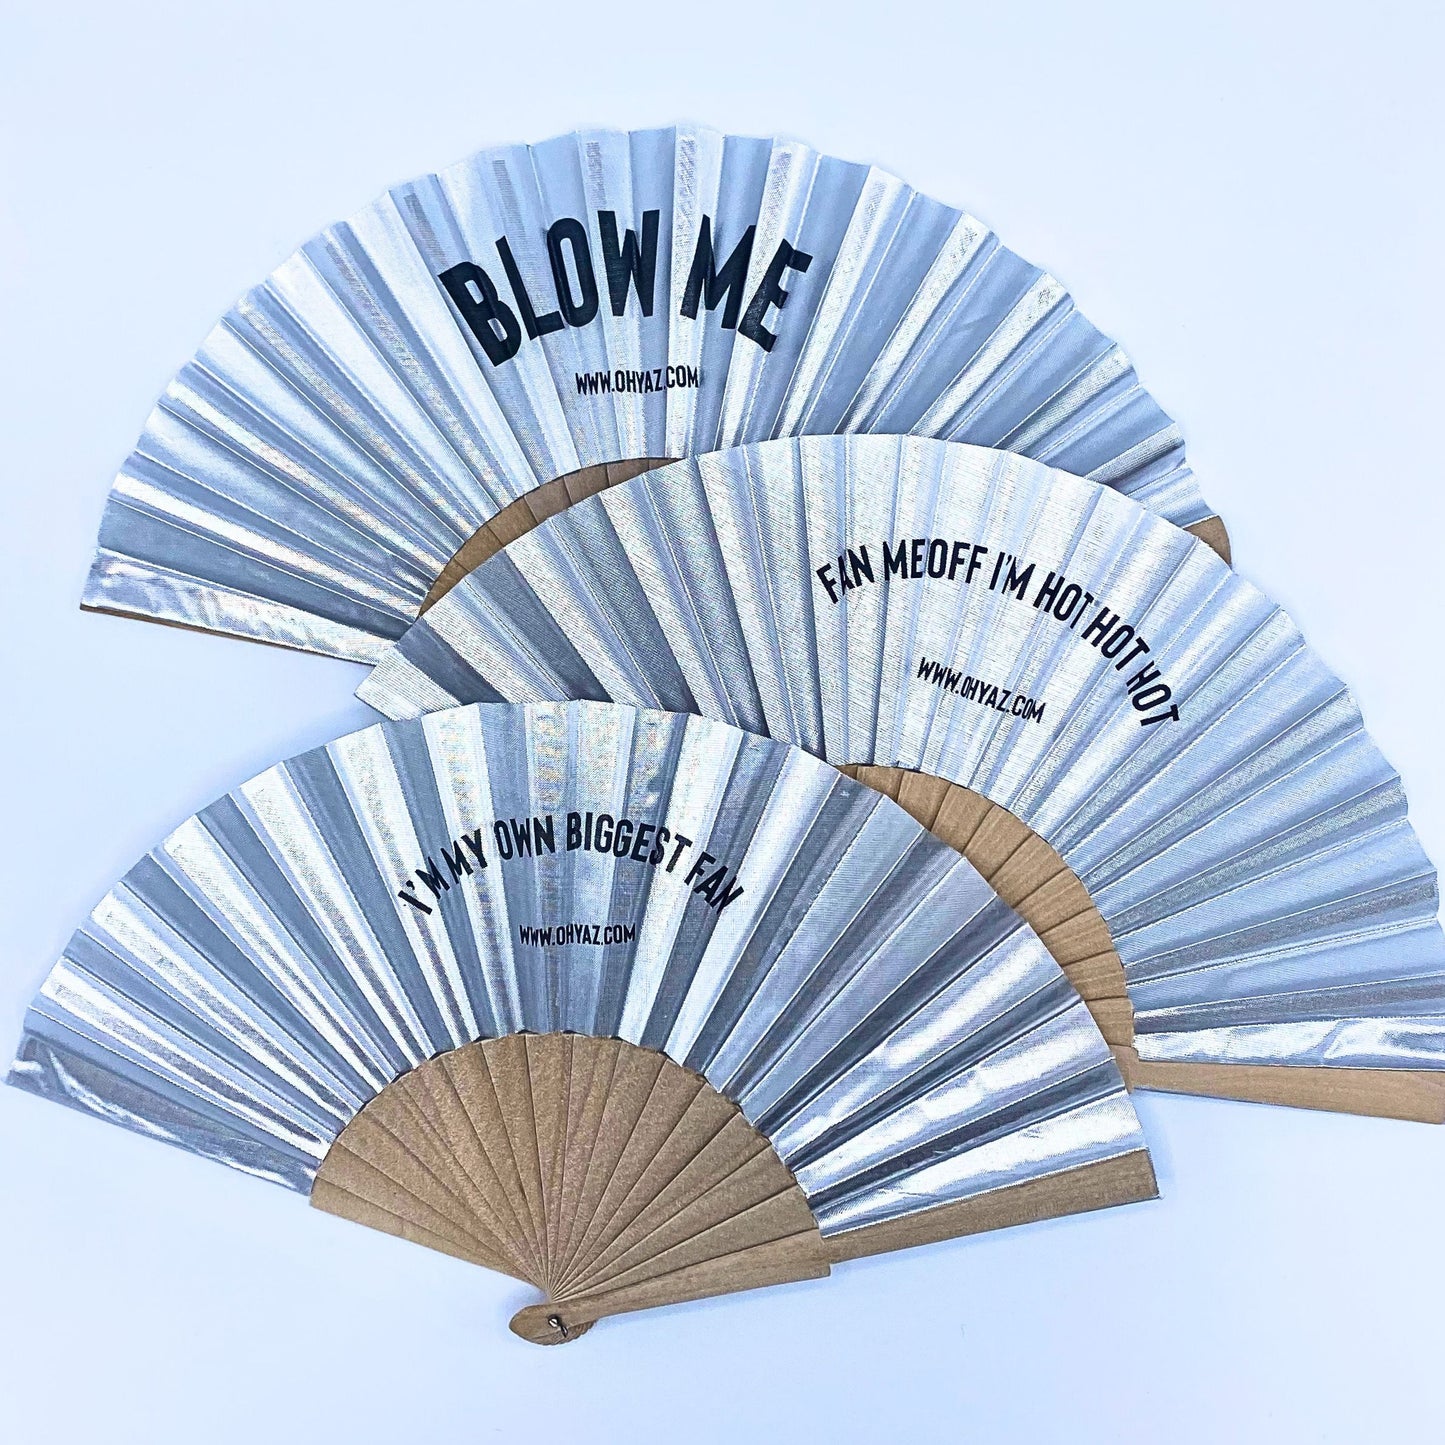 Blow Me - Fan